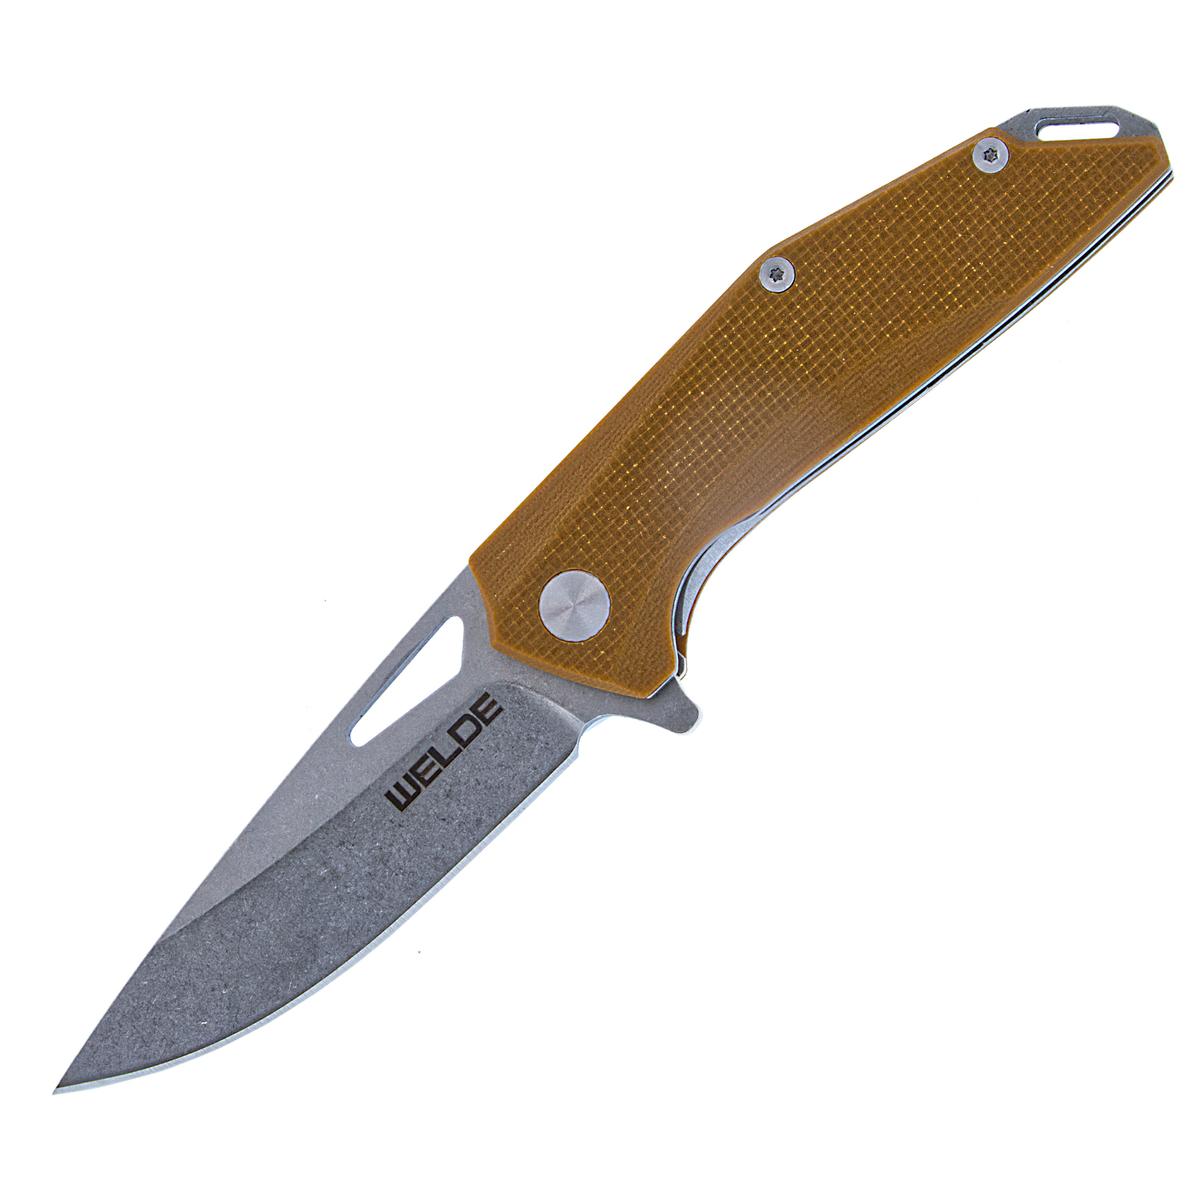 Welde nóż składany D2F28 brązowy.